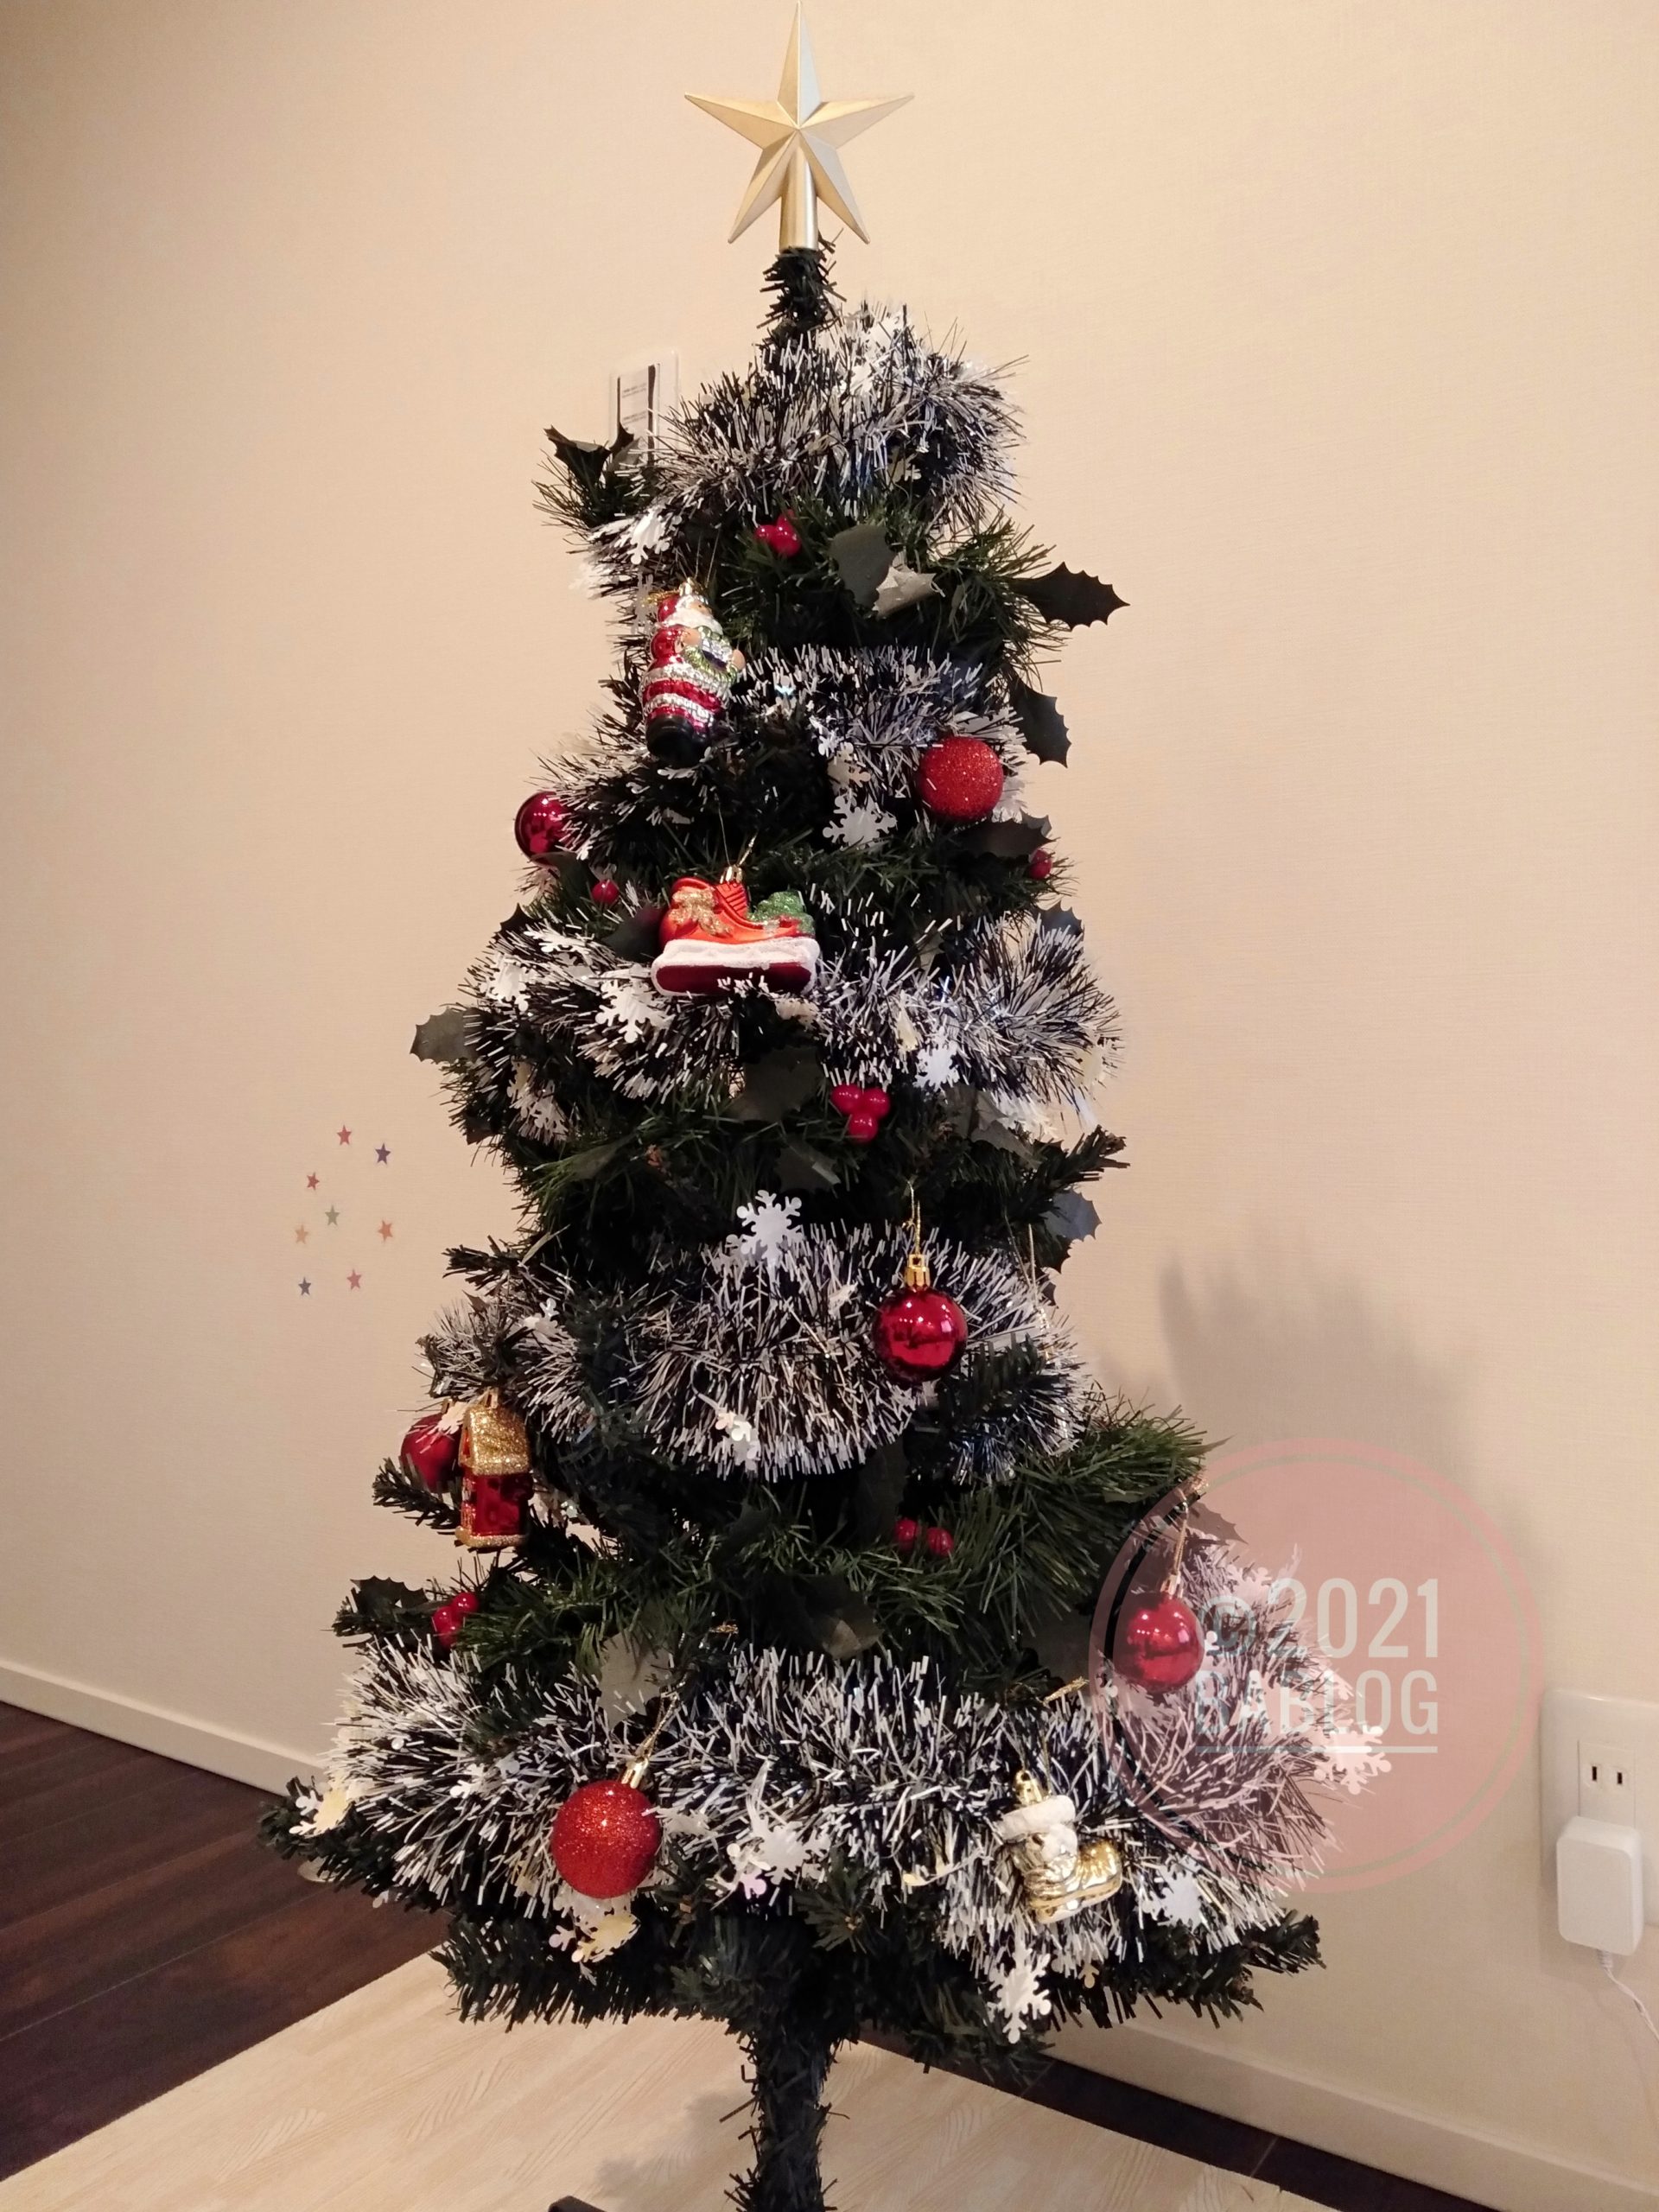 ダイソー】500円のクリスマスツリー♪息子と一緒に飾りつけました | BABLOG